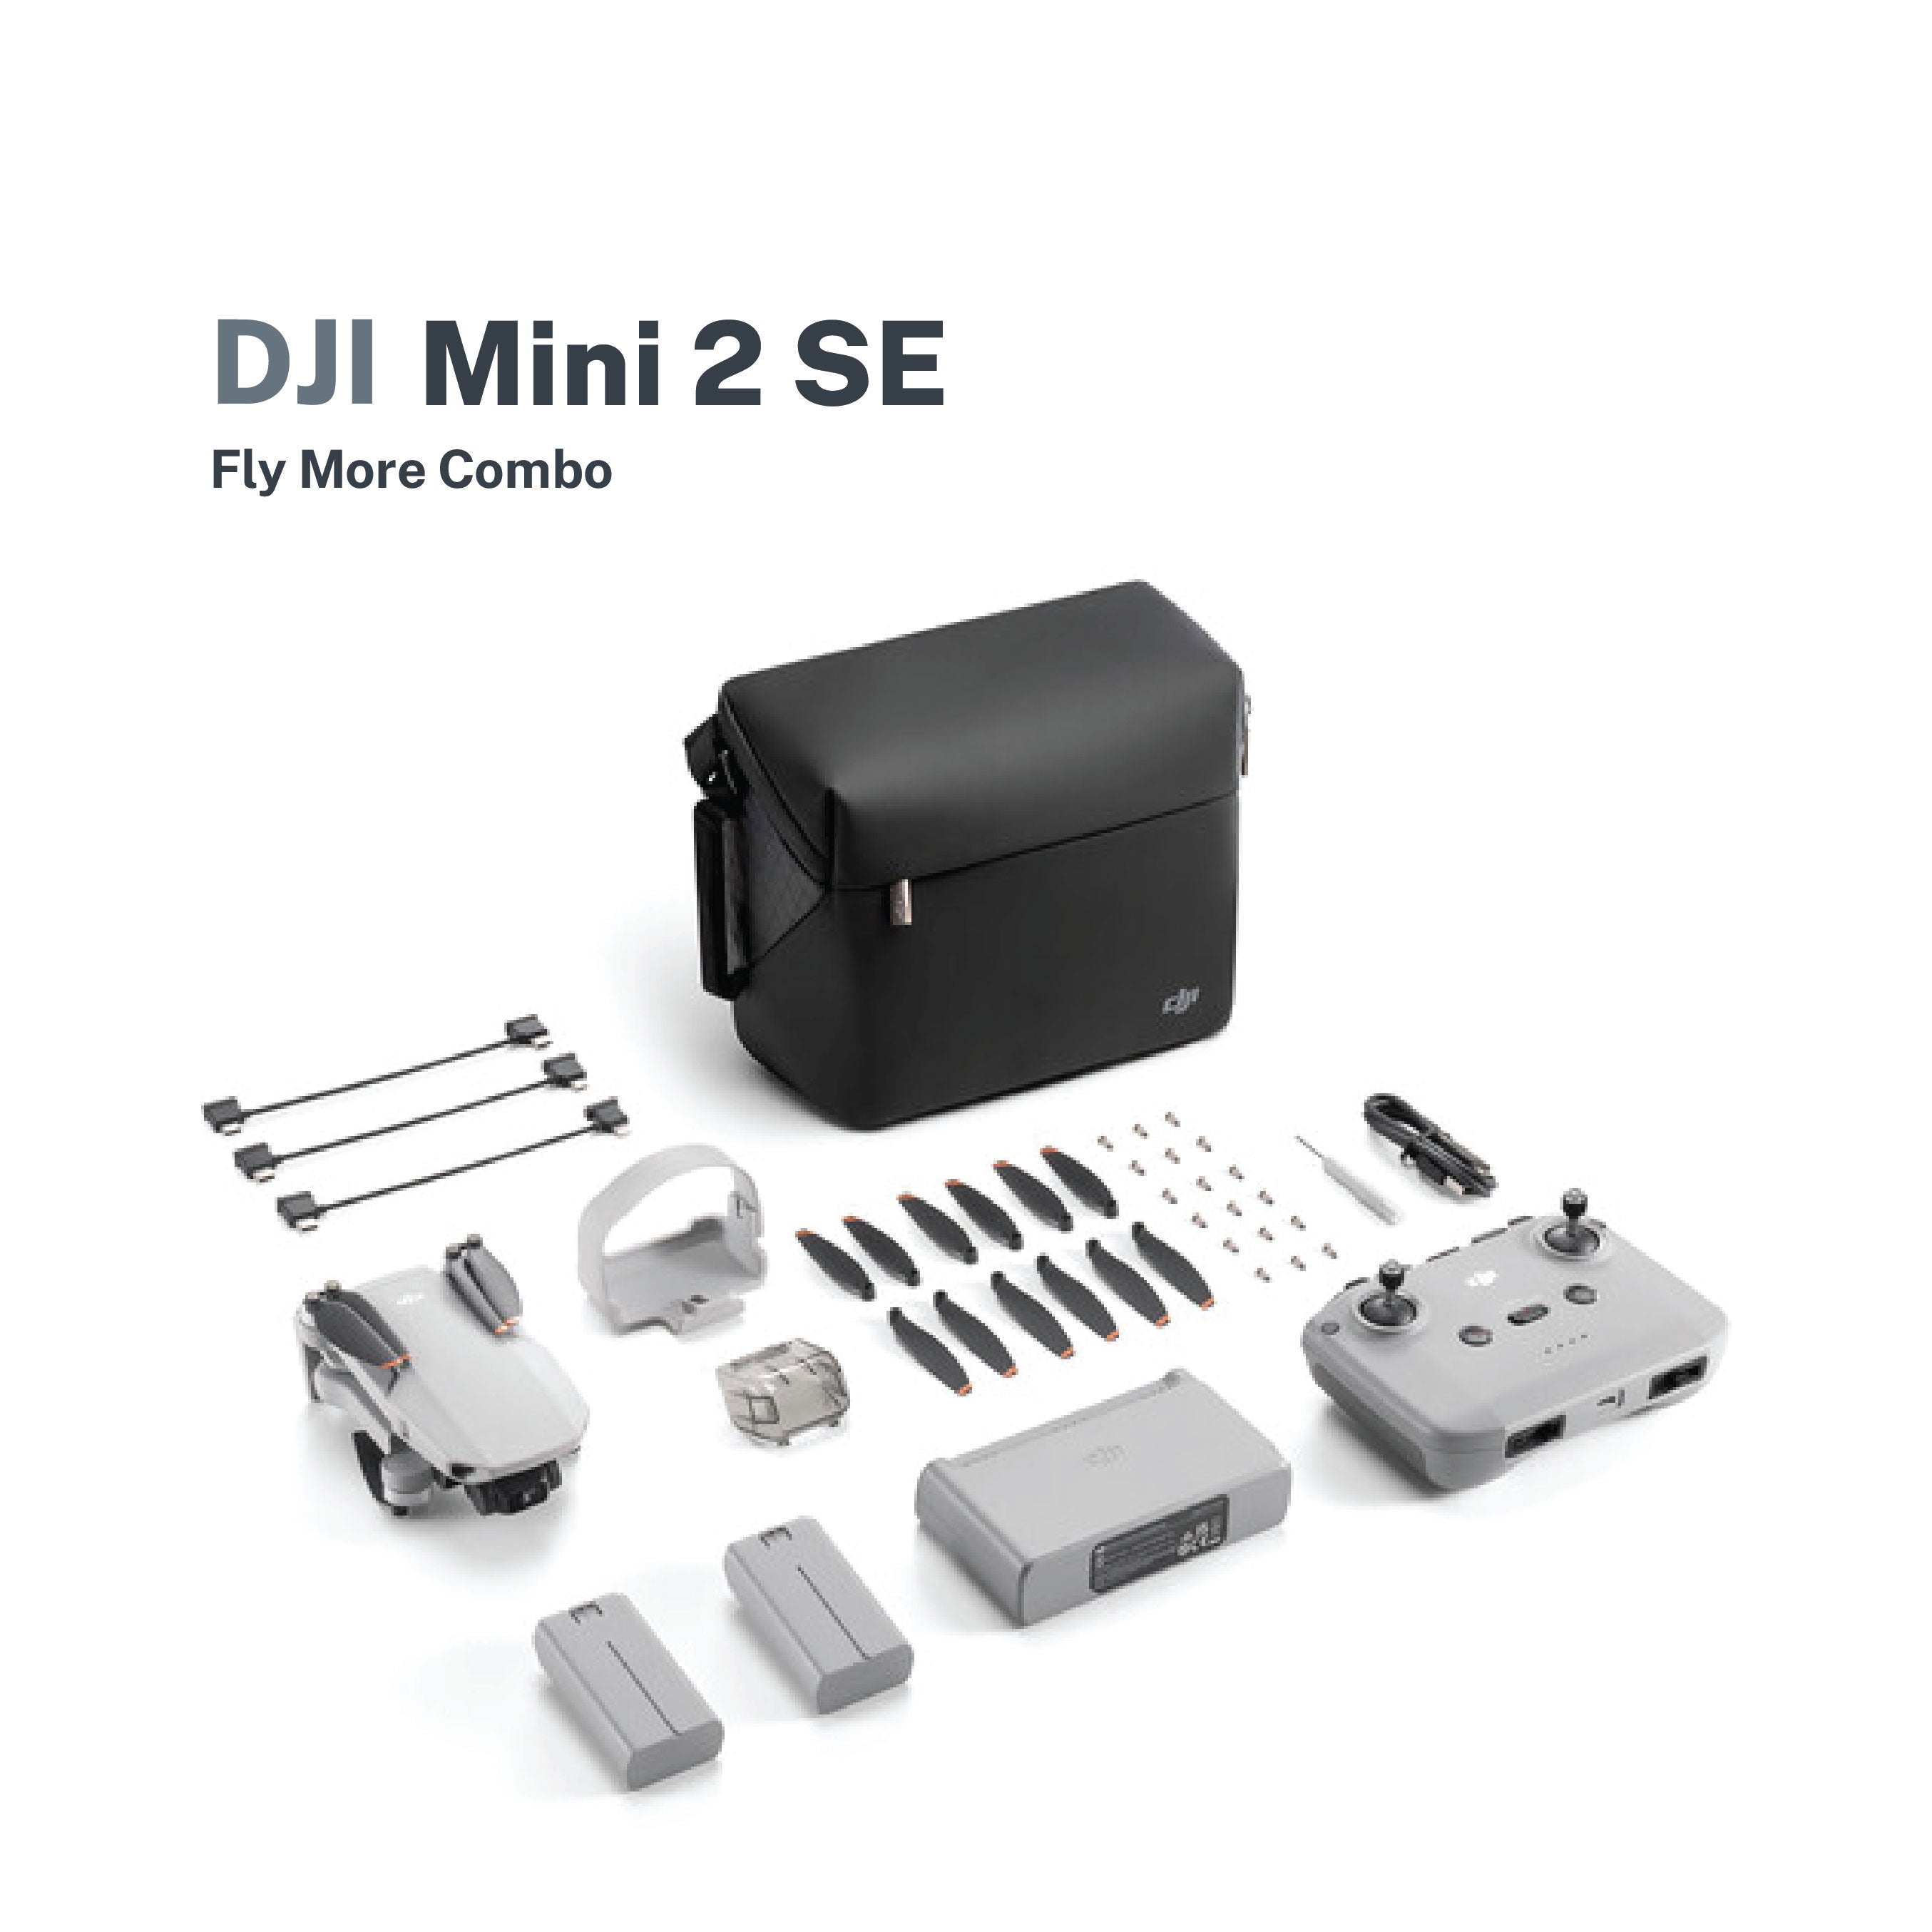 DJI Mini 2 